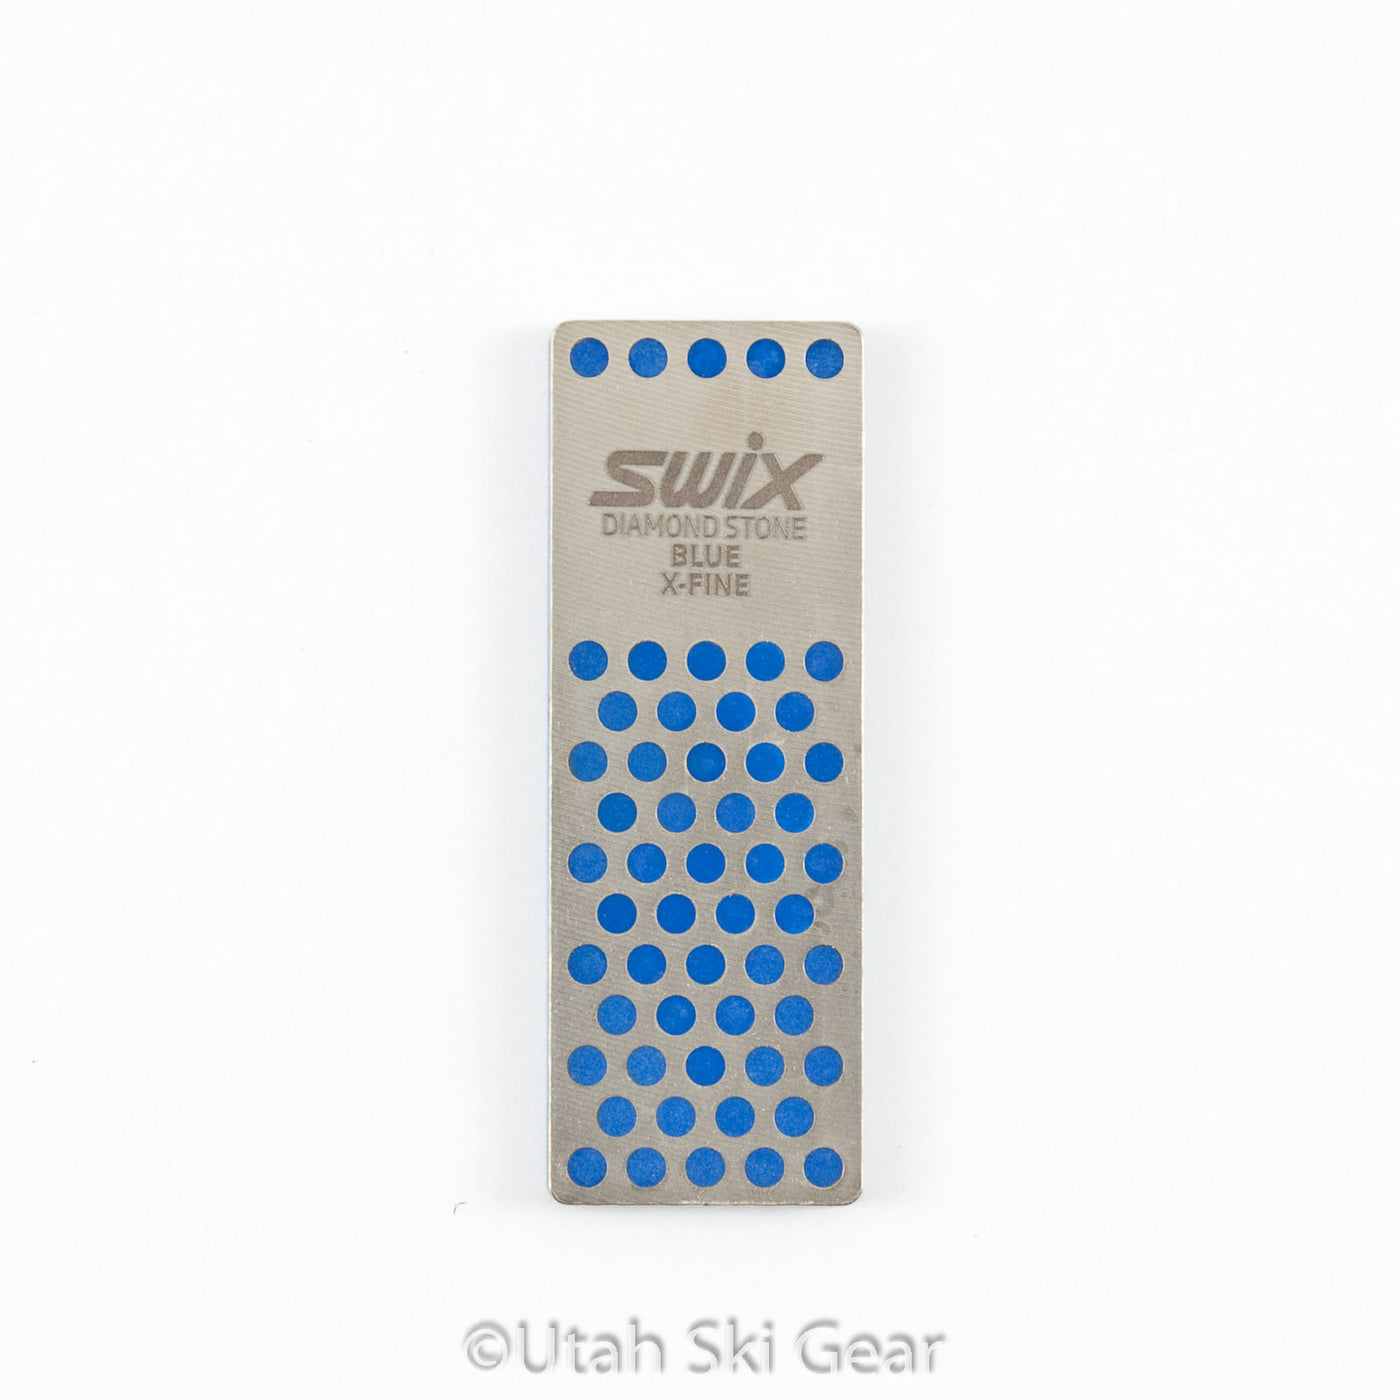 Swix TDM 1000 Diamond Stone - X-Fine - 70mm - Blue EDGE TOOLS Swix   